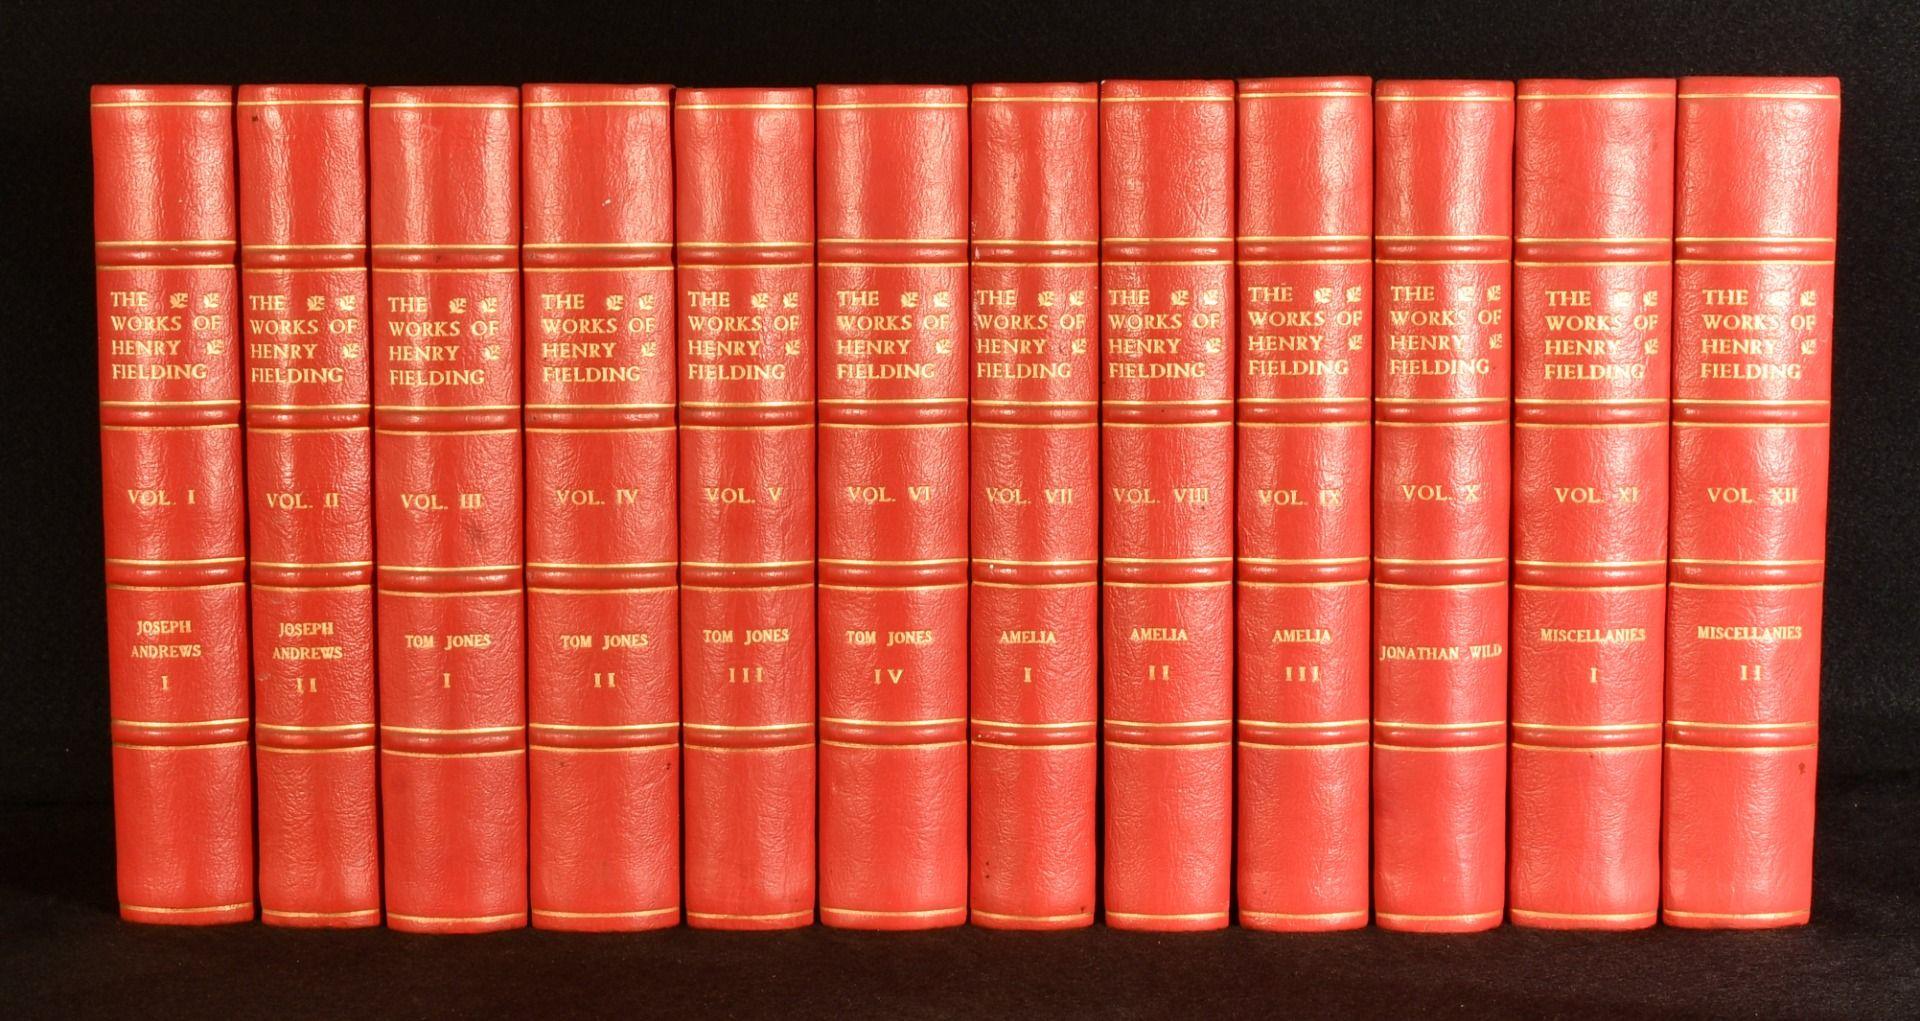 Una edición limitada y bellamente encuadernada de este conjunto completo de doce obras recopiladas de Henry Fielding, con una introducción de Edmund Gosse.

Una edición limitada, de la que sólo se publicaron setecientos cincuenta